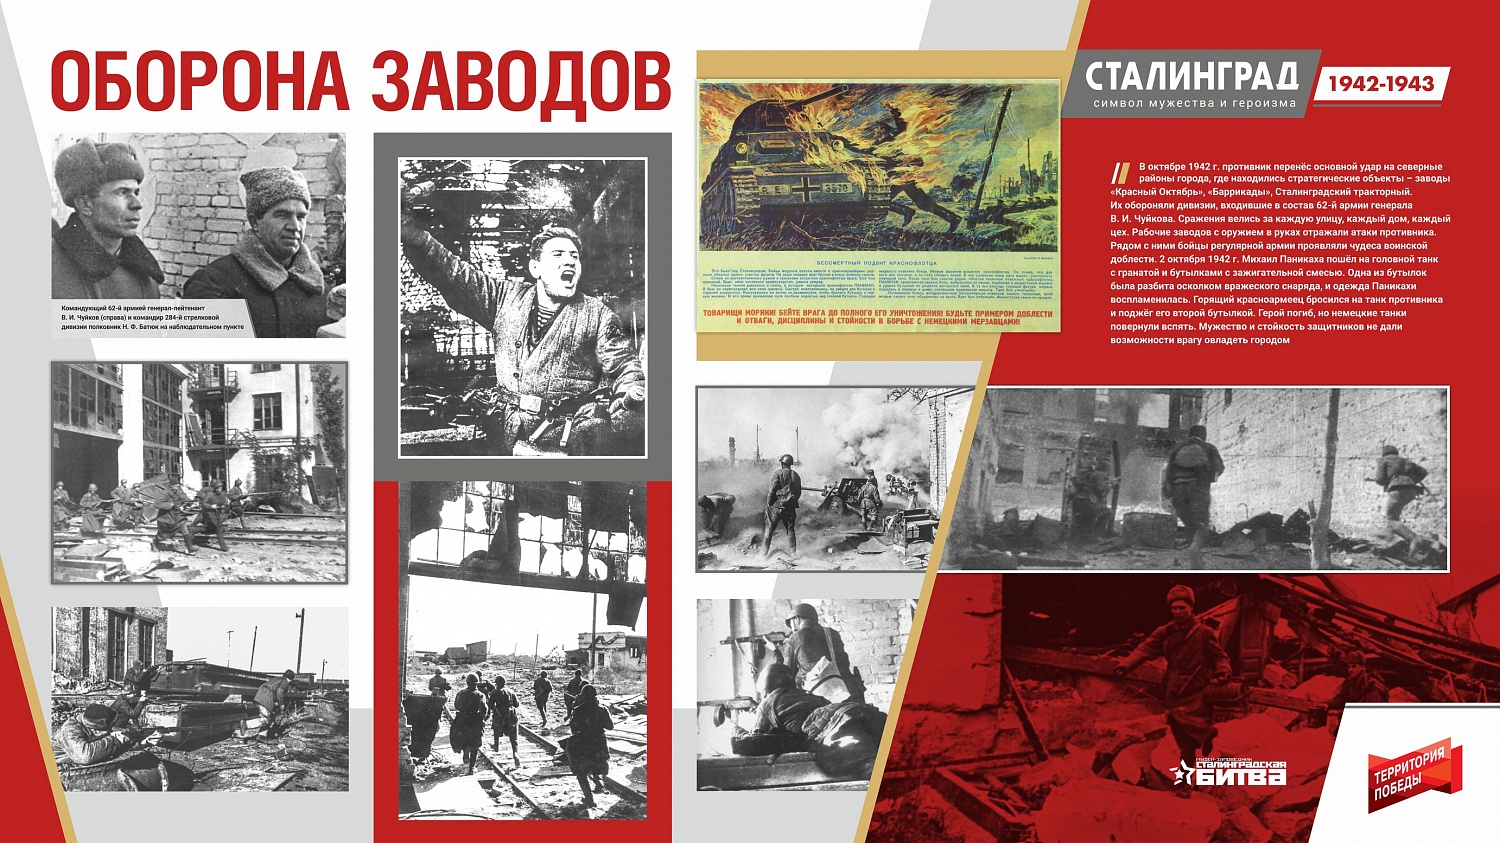 Сталинград 1942-1943. Символ мужества и героизма. Онлайн-проект